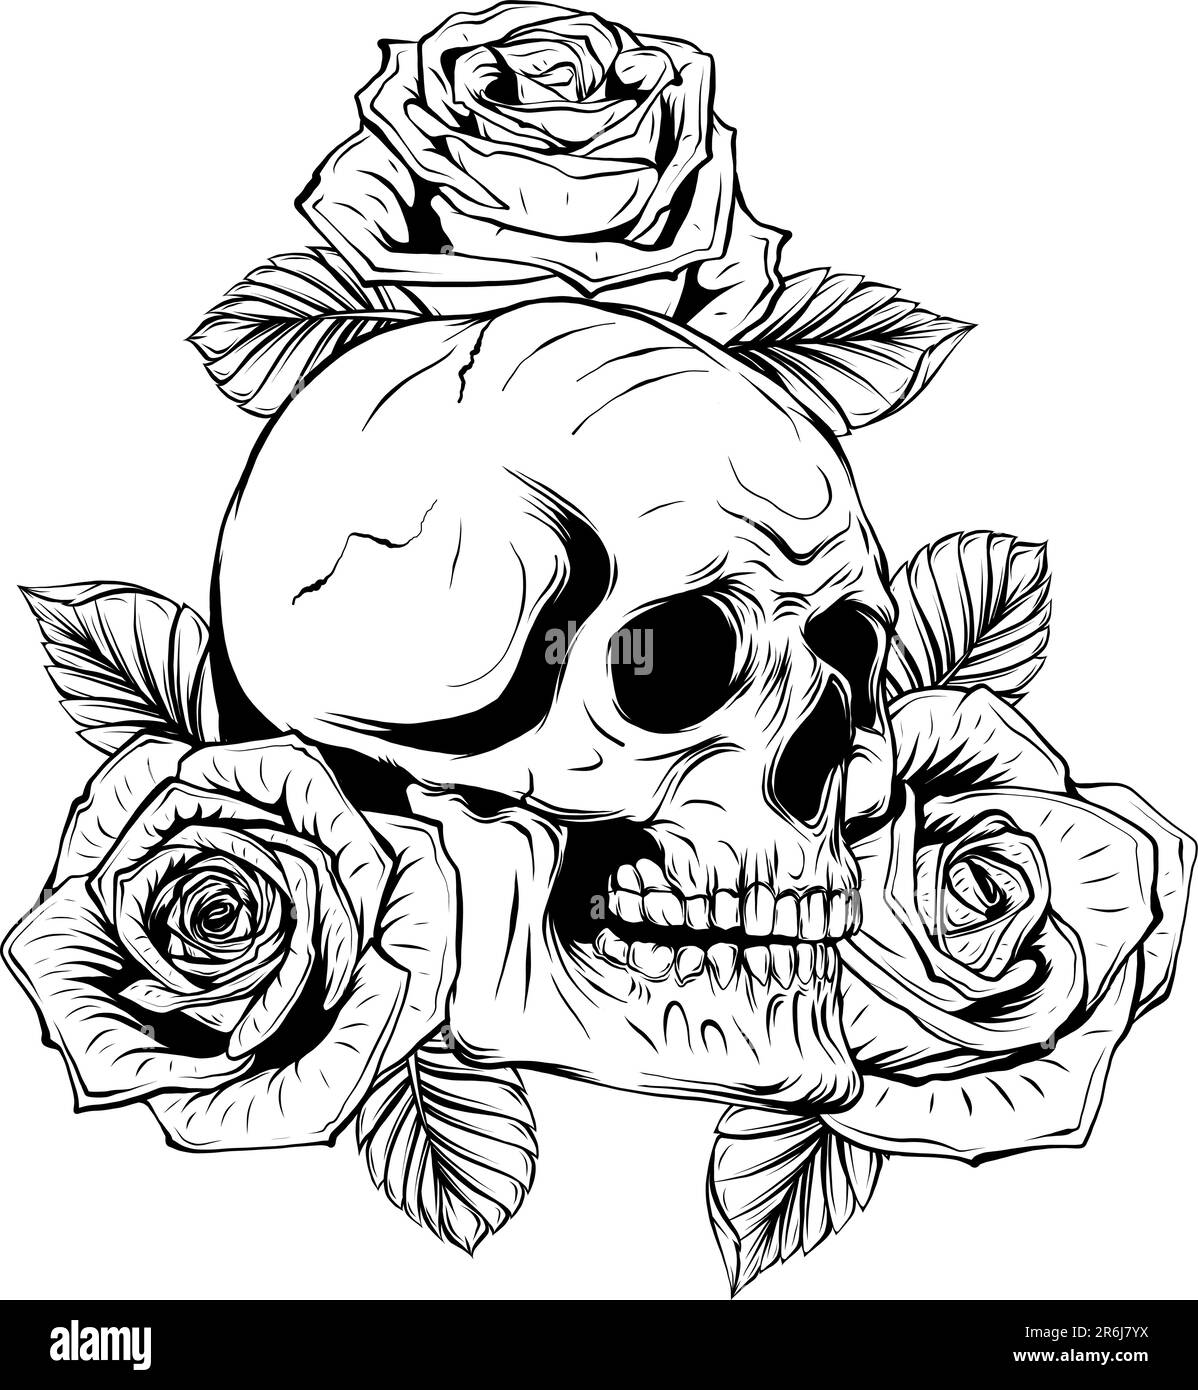 Crâne humain vintage monochrome avec fleurs roses illustration vectorielle isolée Illustration de Vecteur